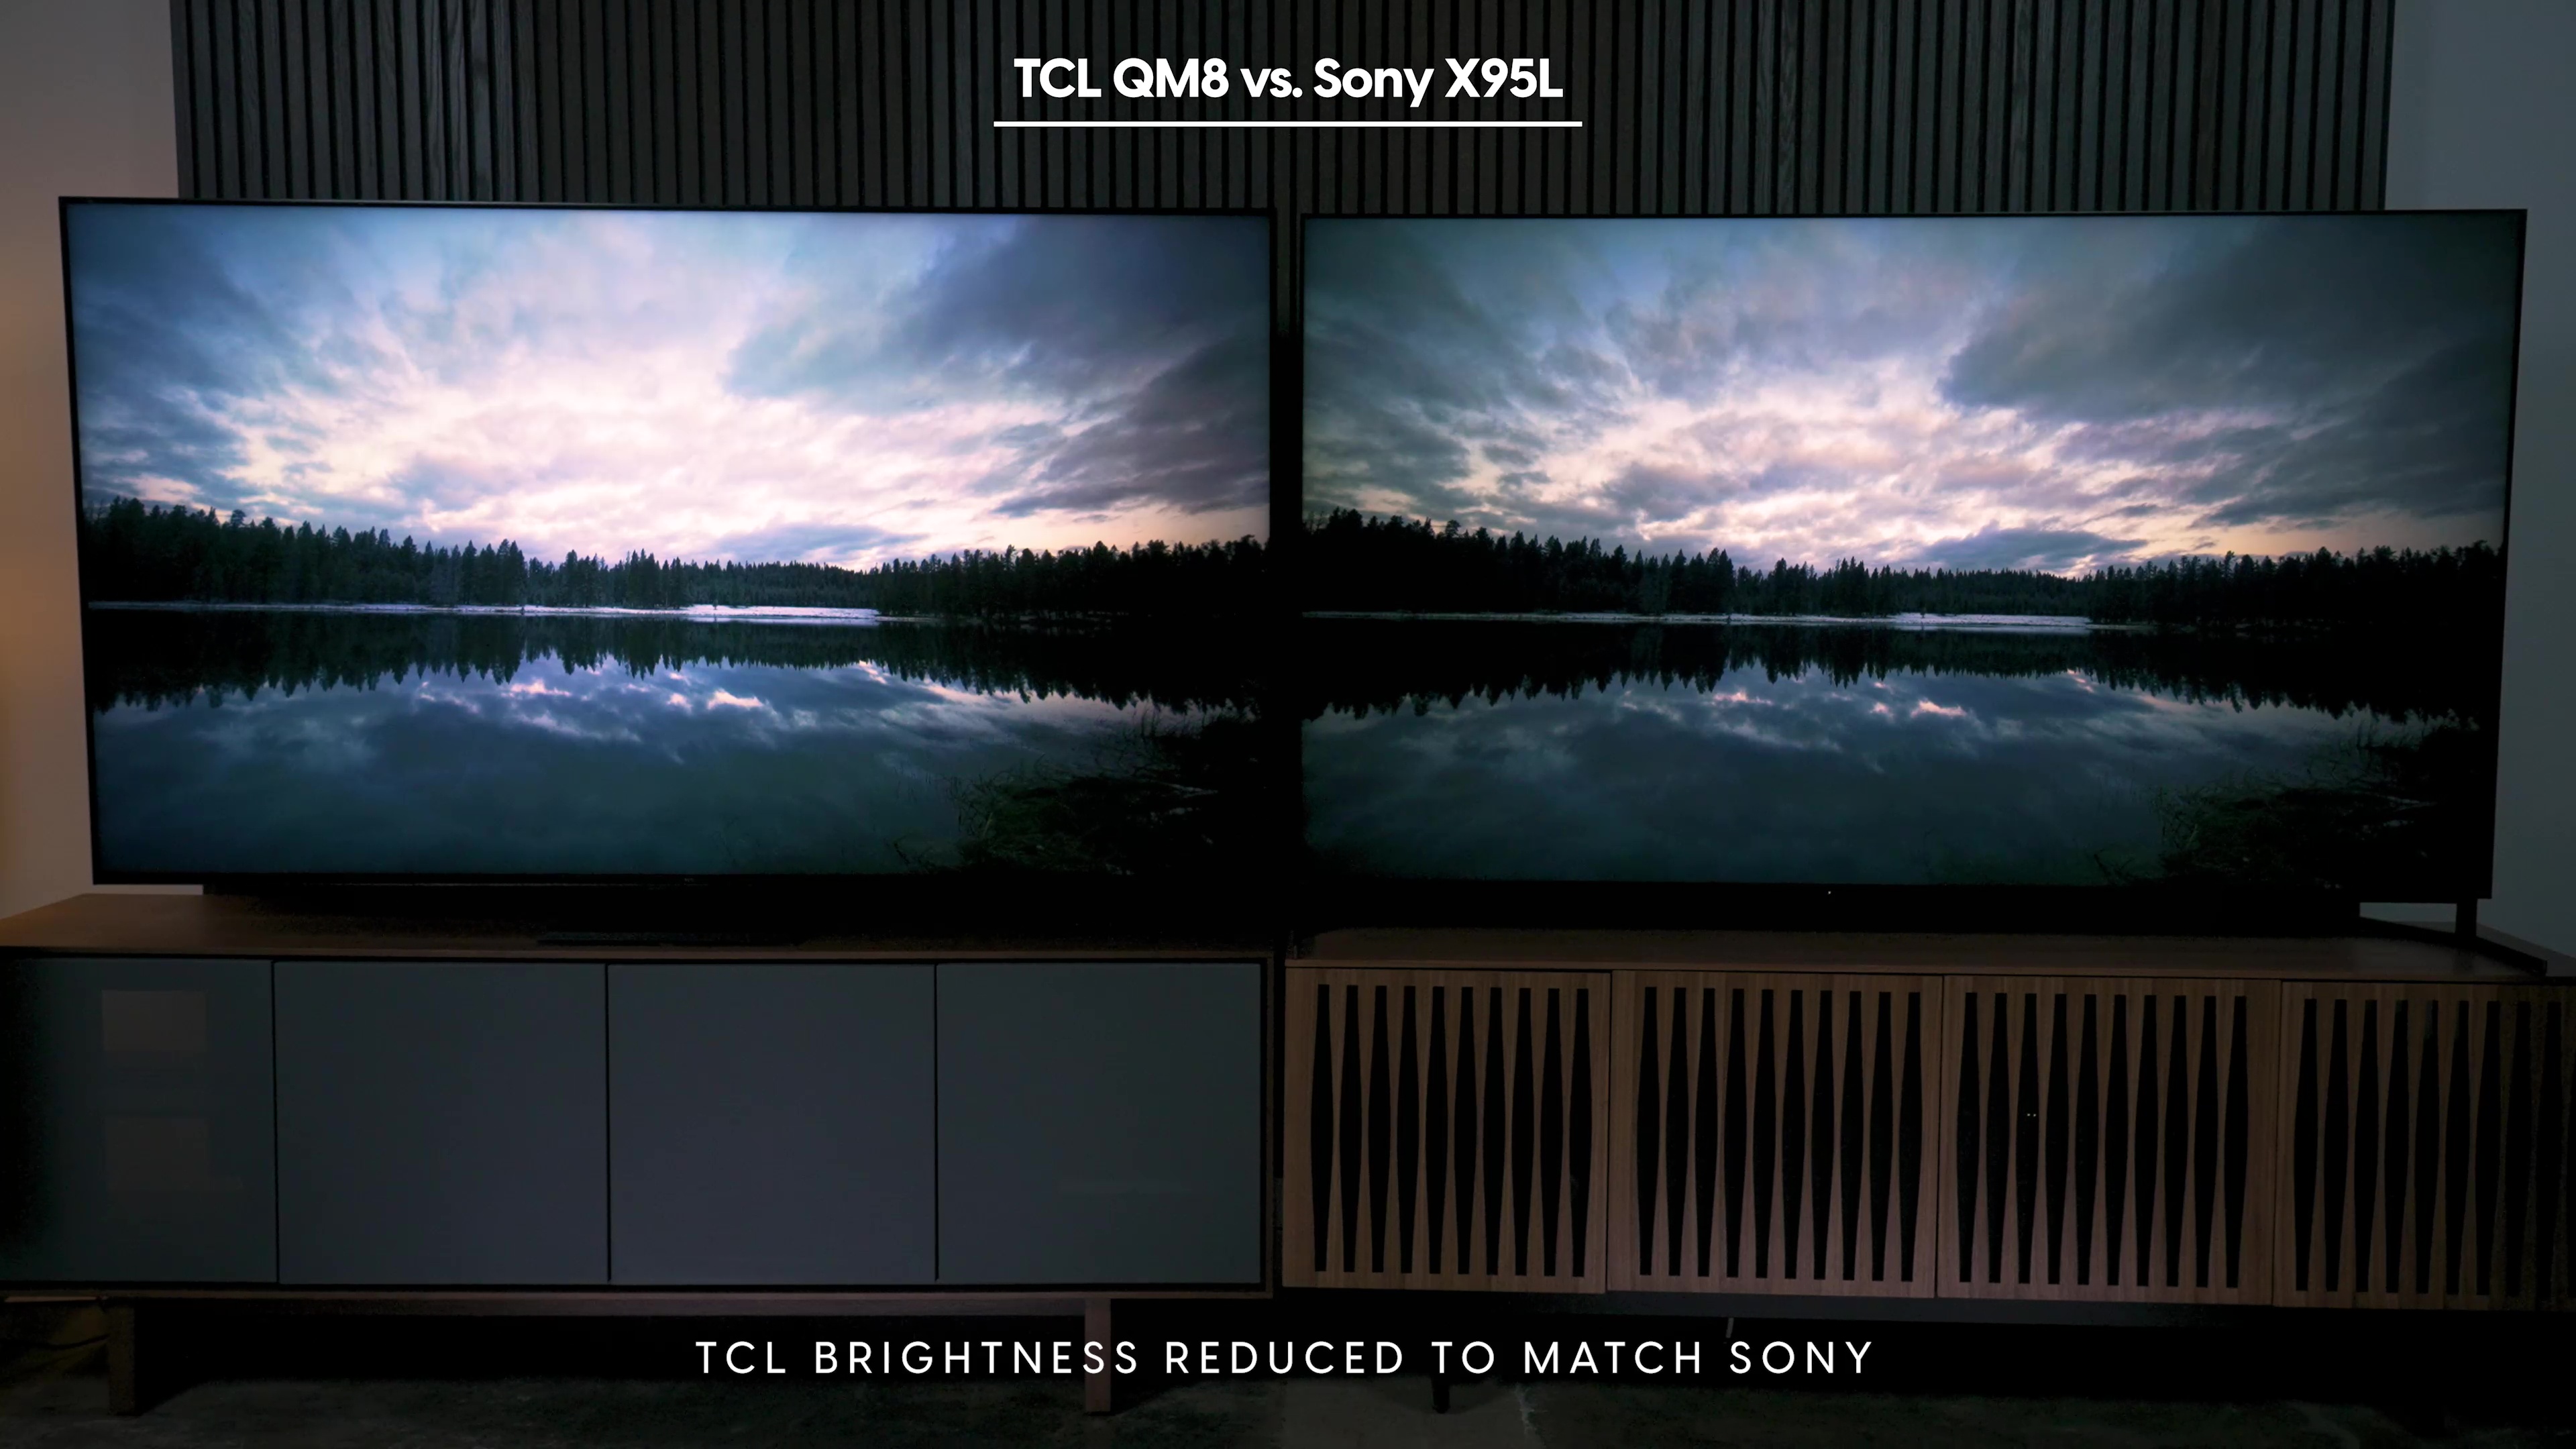 Comparação lado a lado de um pôr do sol em um Sony Bravia X95L vs TCL QM8.